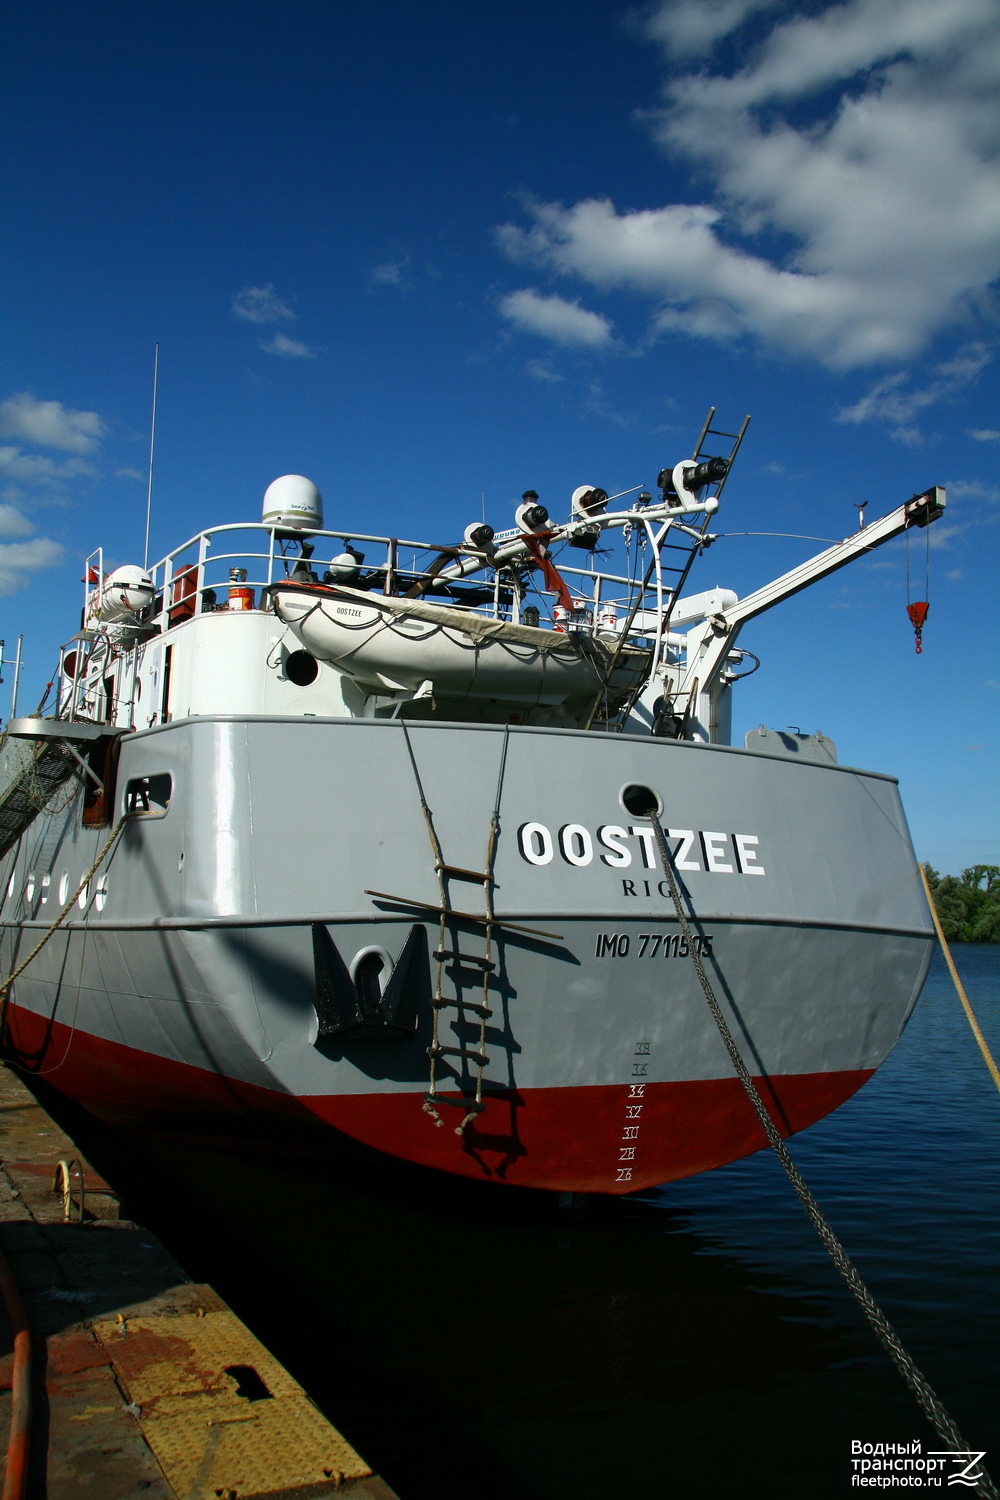 Oostzee. Элементы и детали